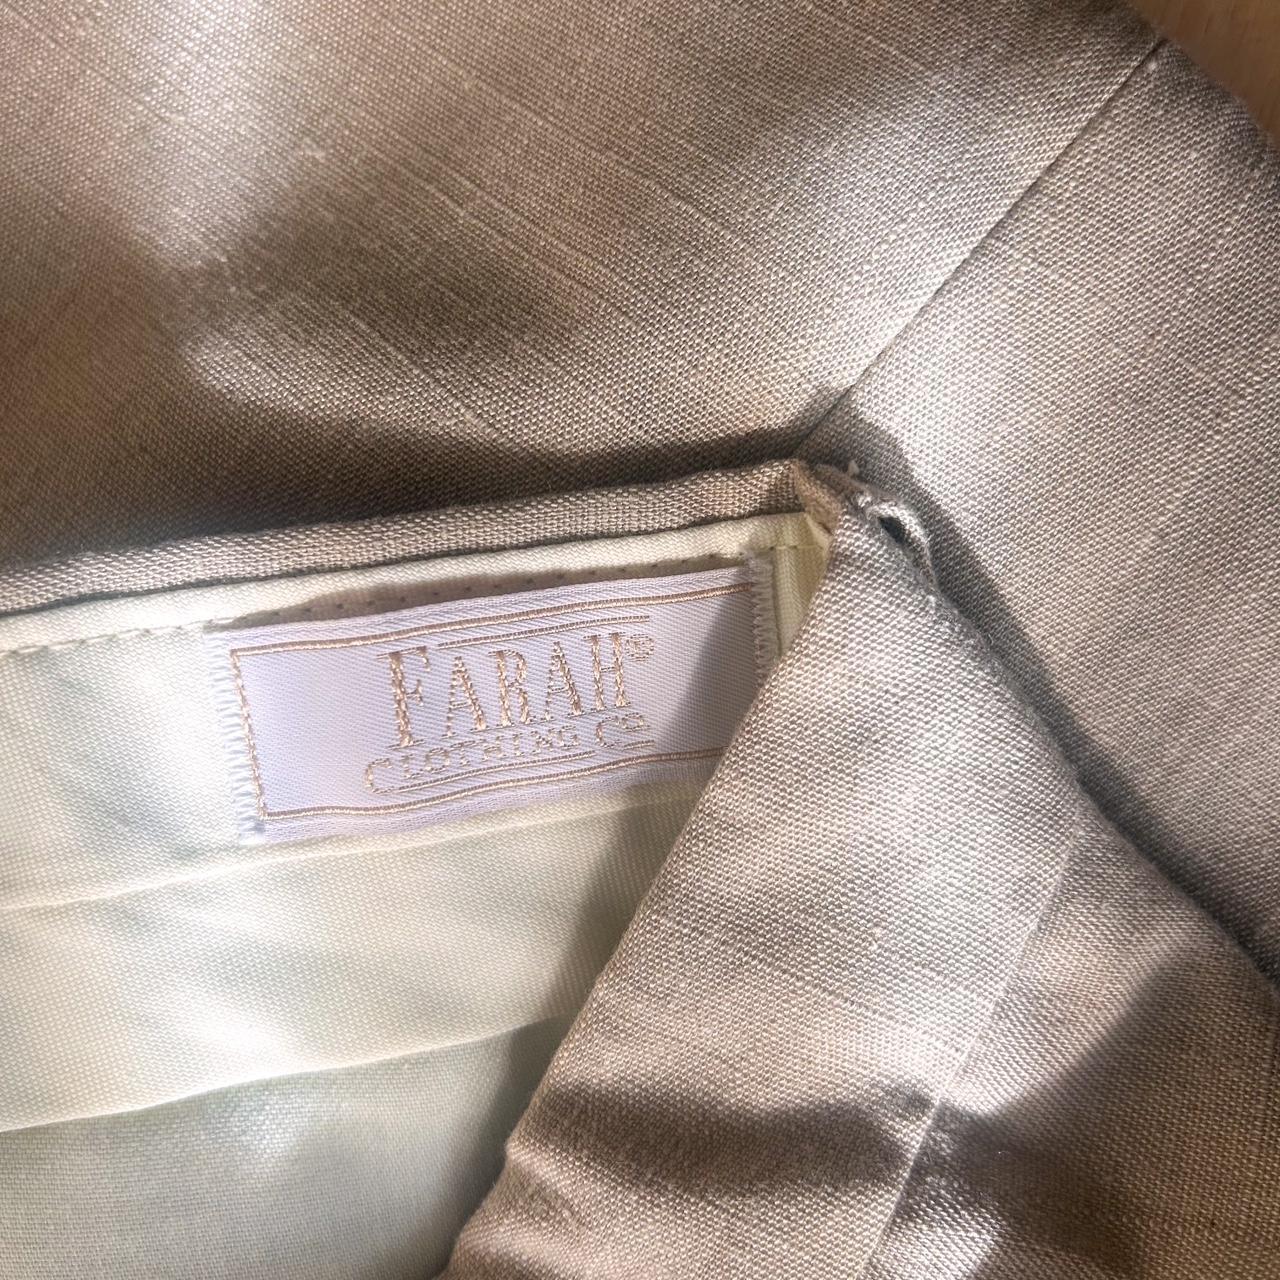 Farah Men's Cream and Tan Trousers (2)